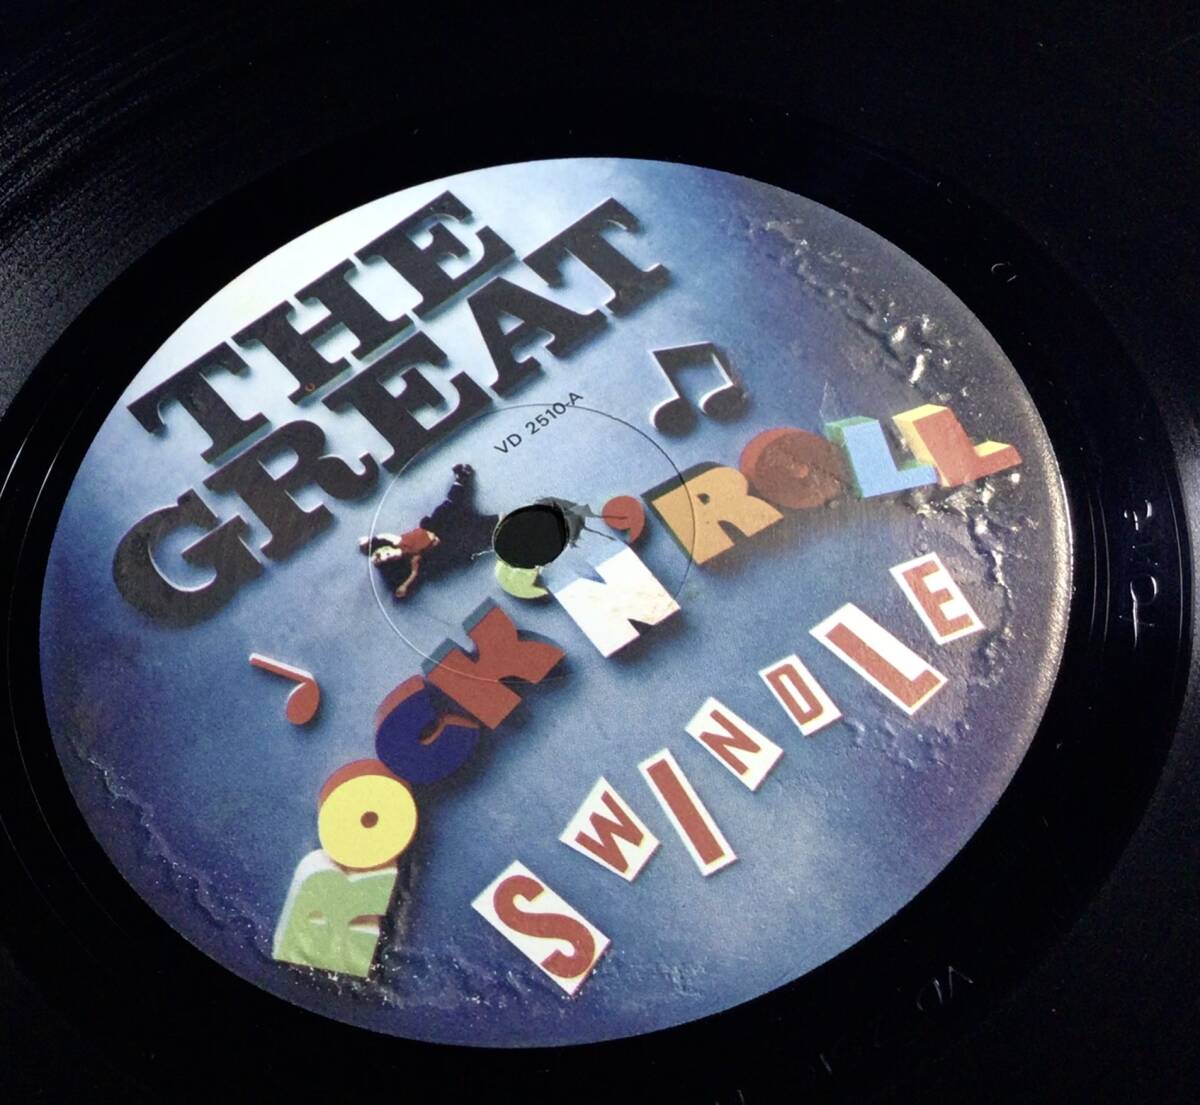 【英LP2枚組】 SEX PISTOLS / THE GREAT ROCK 'N' ROLL SWINDLE サントラ 1979 UK盤 LPレコード TOWNHOUSE TONE PORKY 刻印 VD 2510 試聴済_画像10